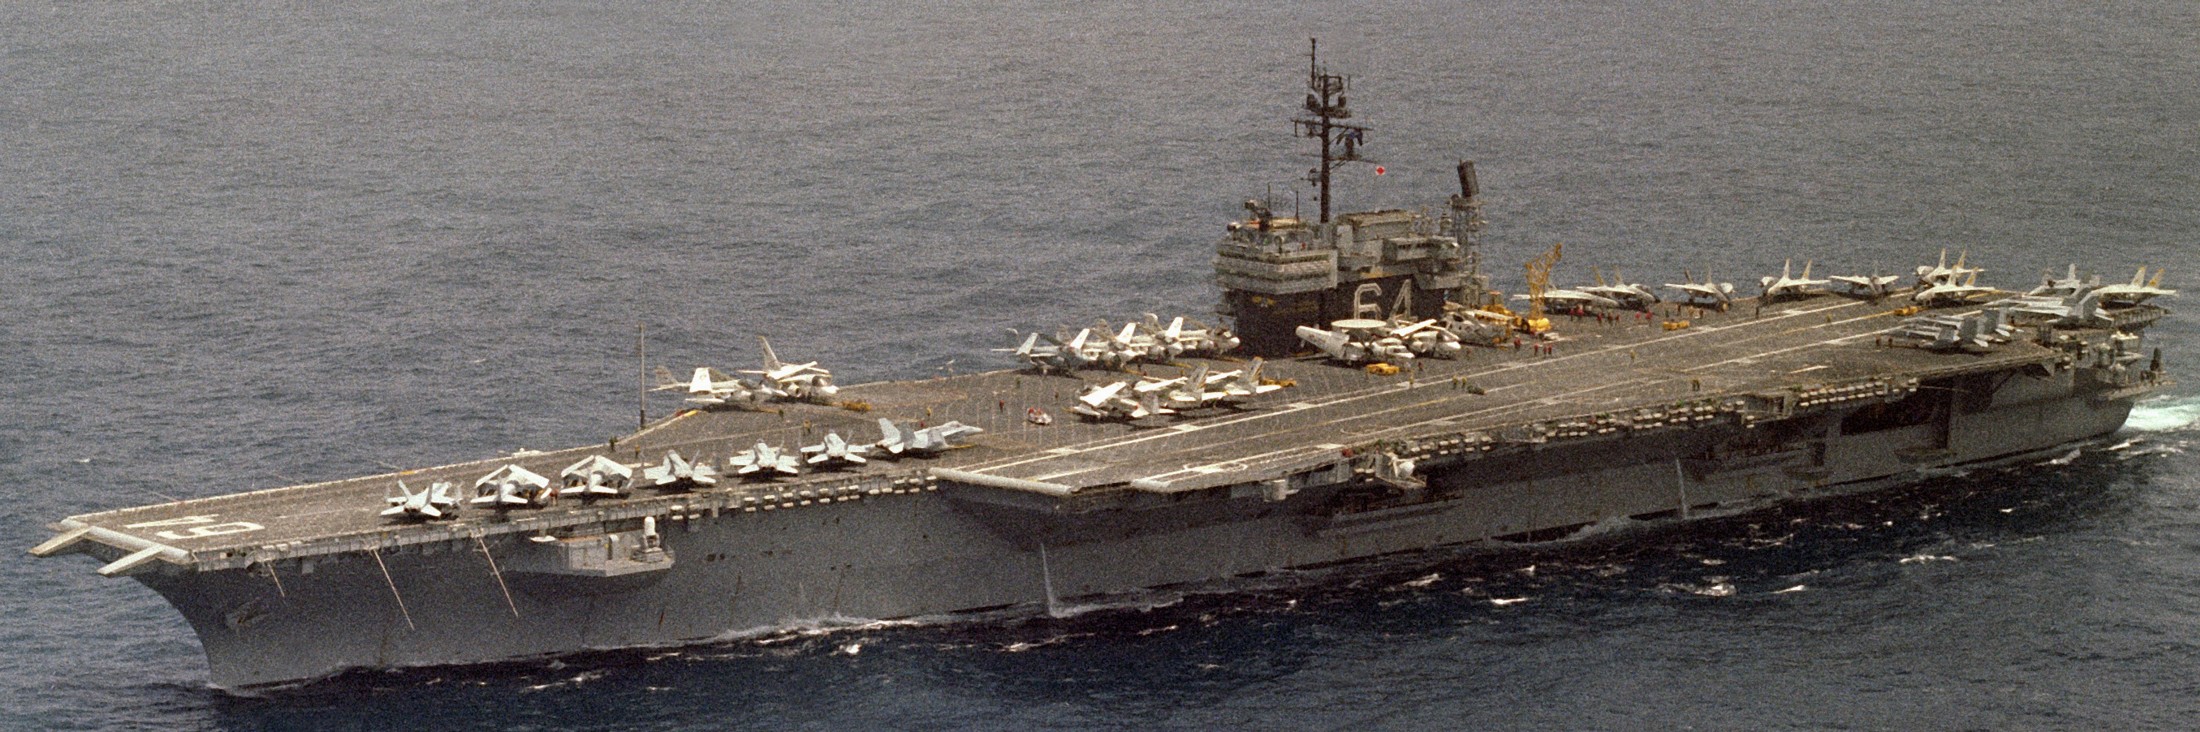 cv-64 uss constellation kitty hawk class aircraft carrier air wing cvw-14 us navy 1984 69